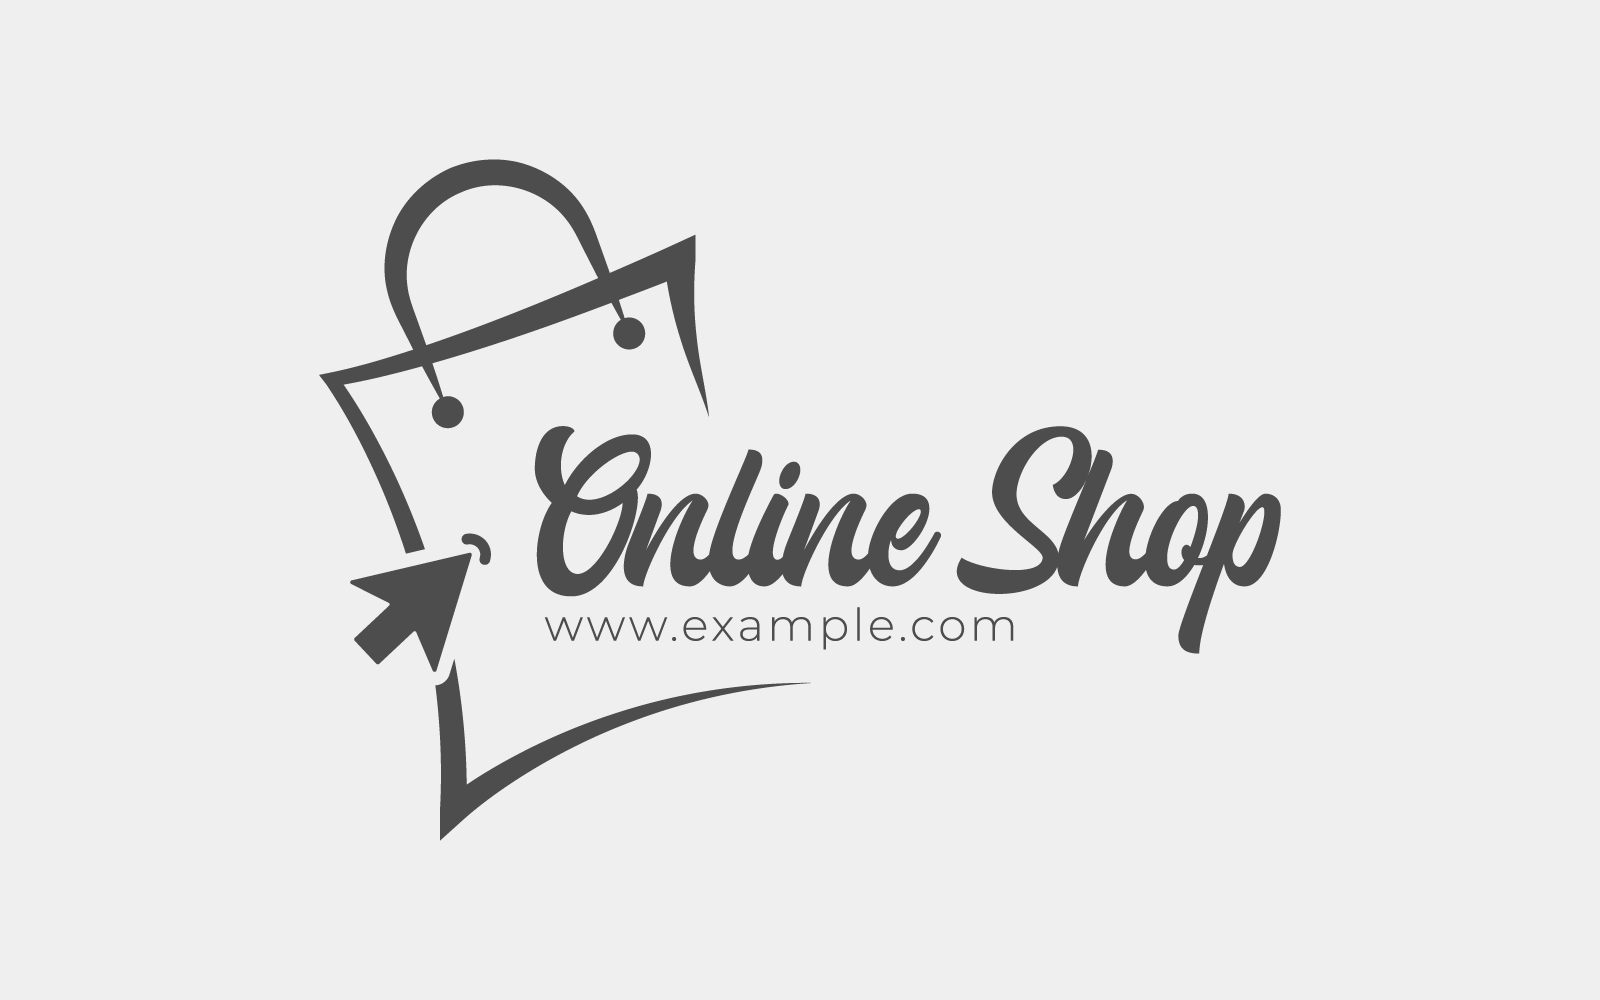 Logo Design For E-Commerce Website Or E-Business With Shopping Bag And Click Cursor